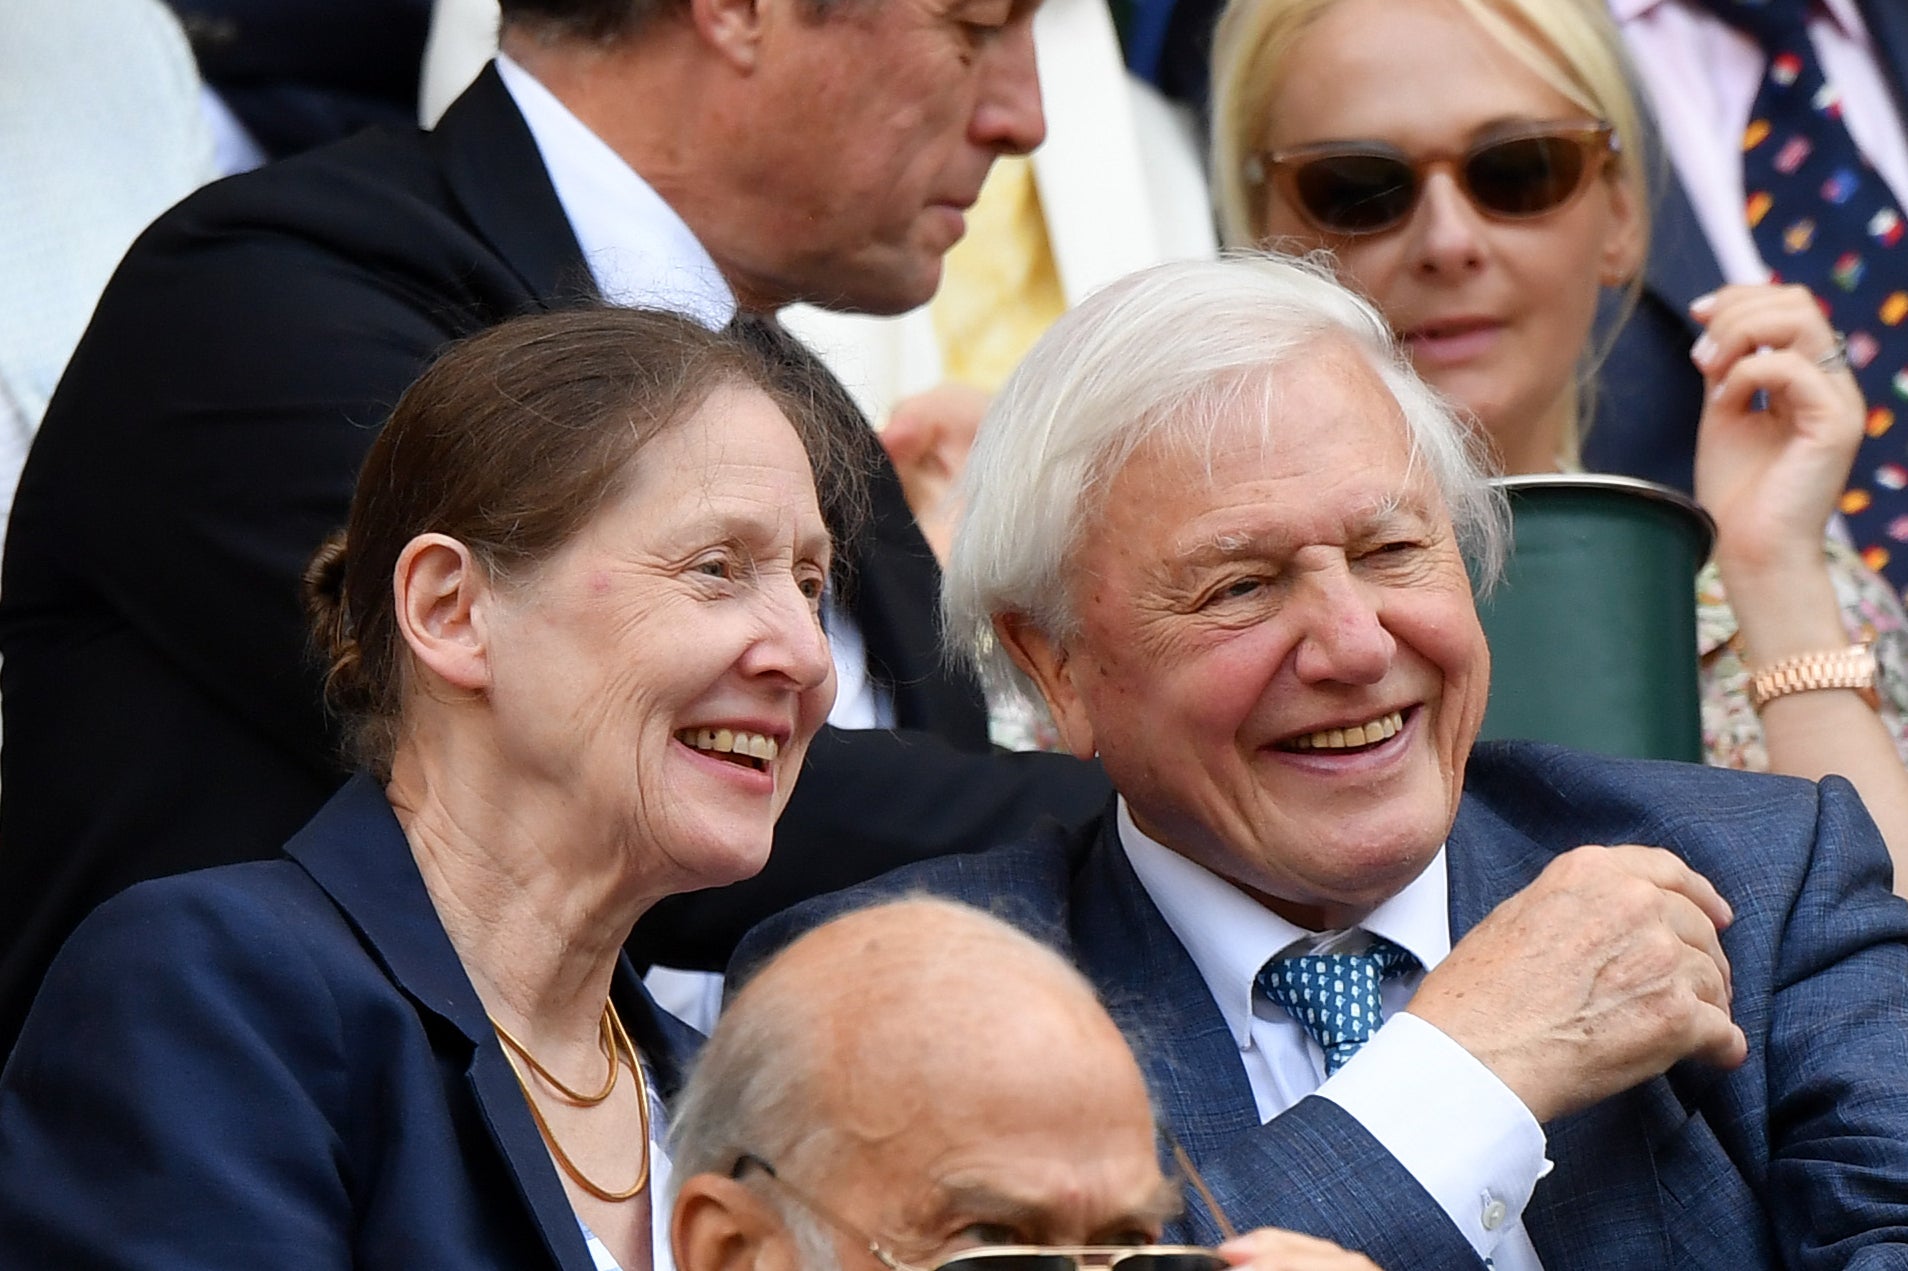 Attenborough with his daughter at Wimbledon 2019